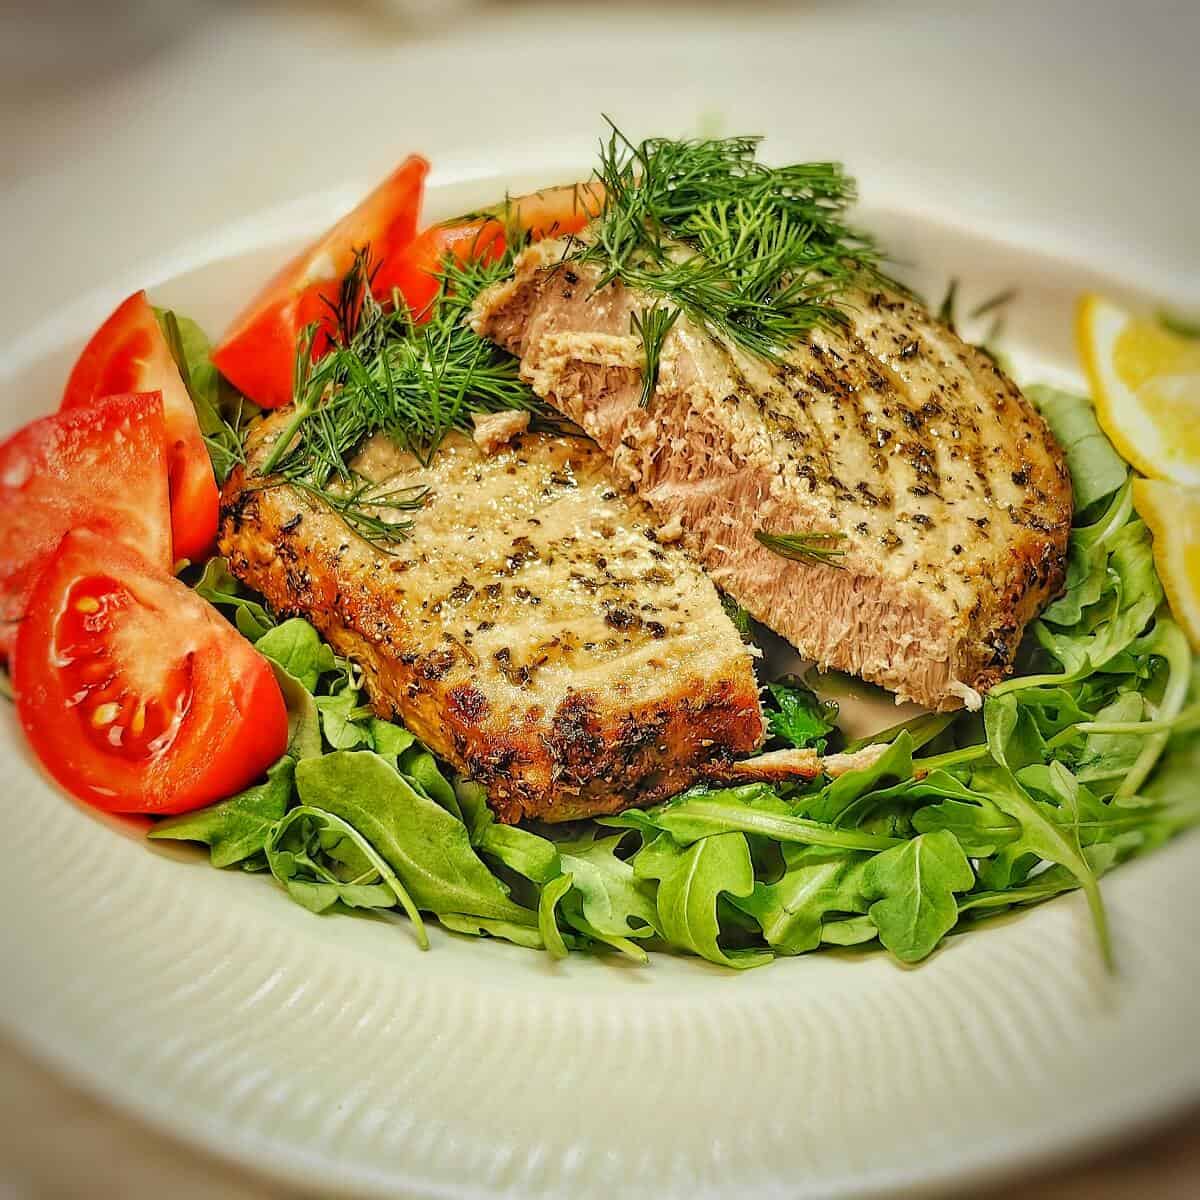 serving delicious air fryer tuna steak